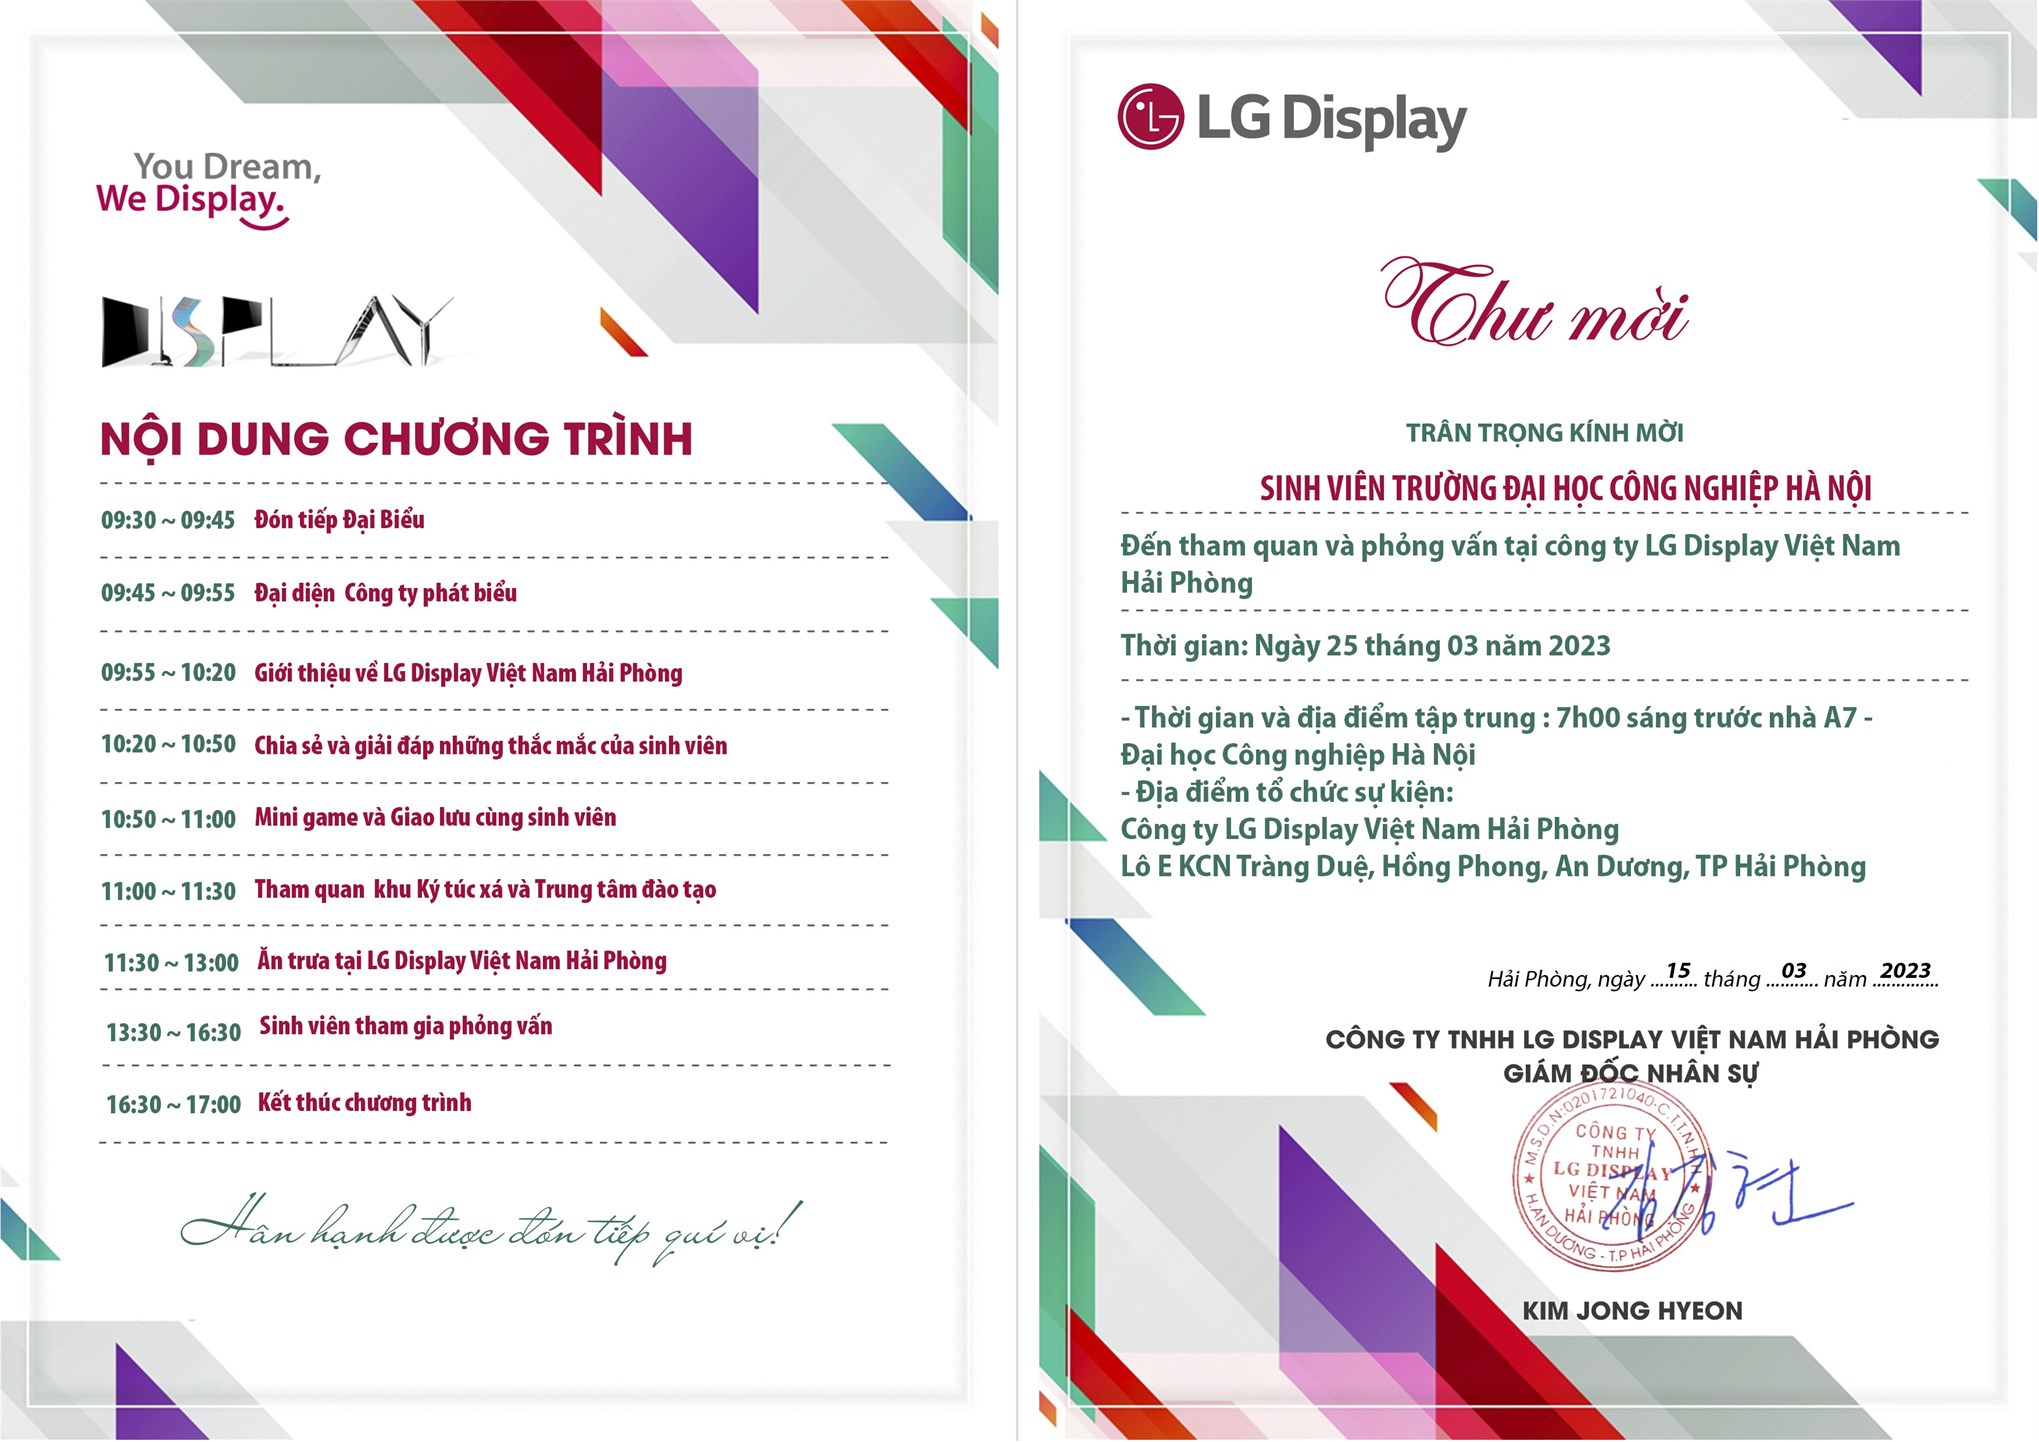 Chương trình tham quan và thi tuyển trực tiếp tại Công ty TNHH LG Display Việt Nam Hải Phòng - Thứ 7, ngày 25/03/2023